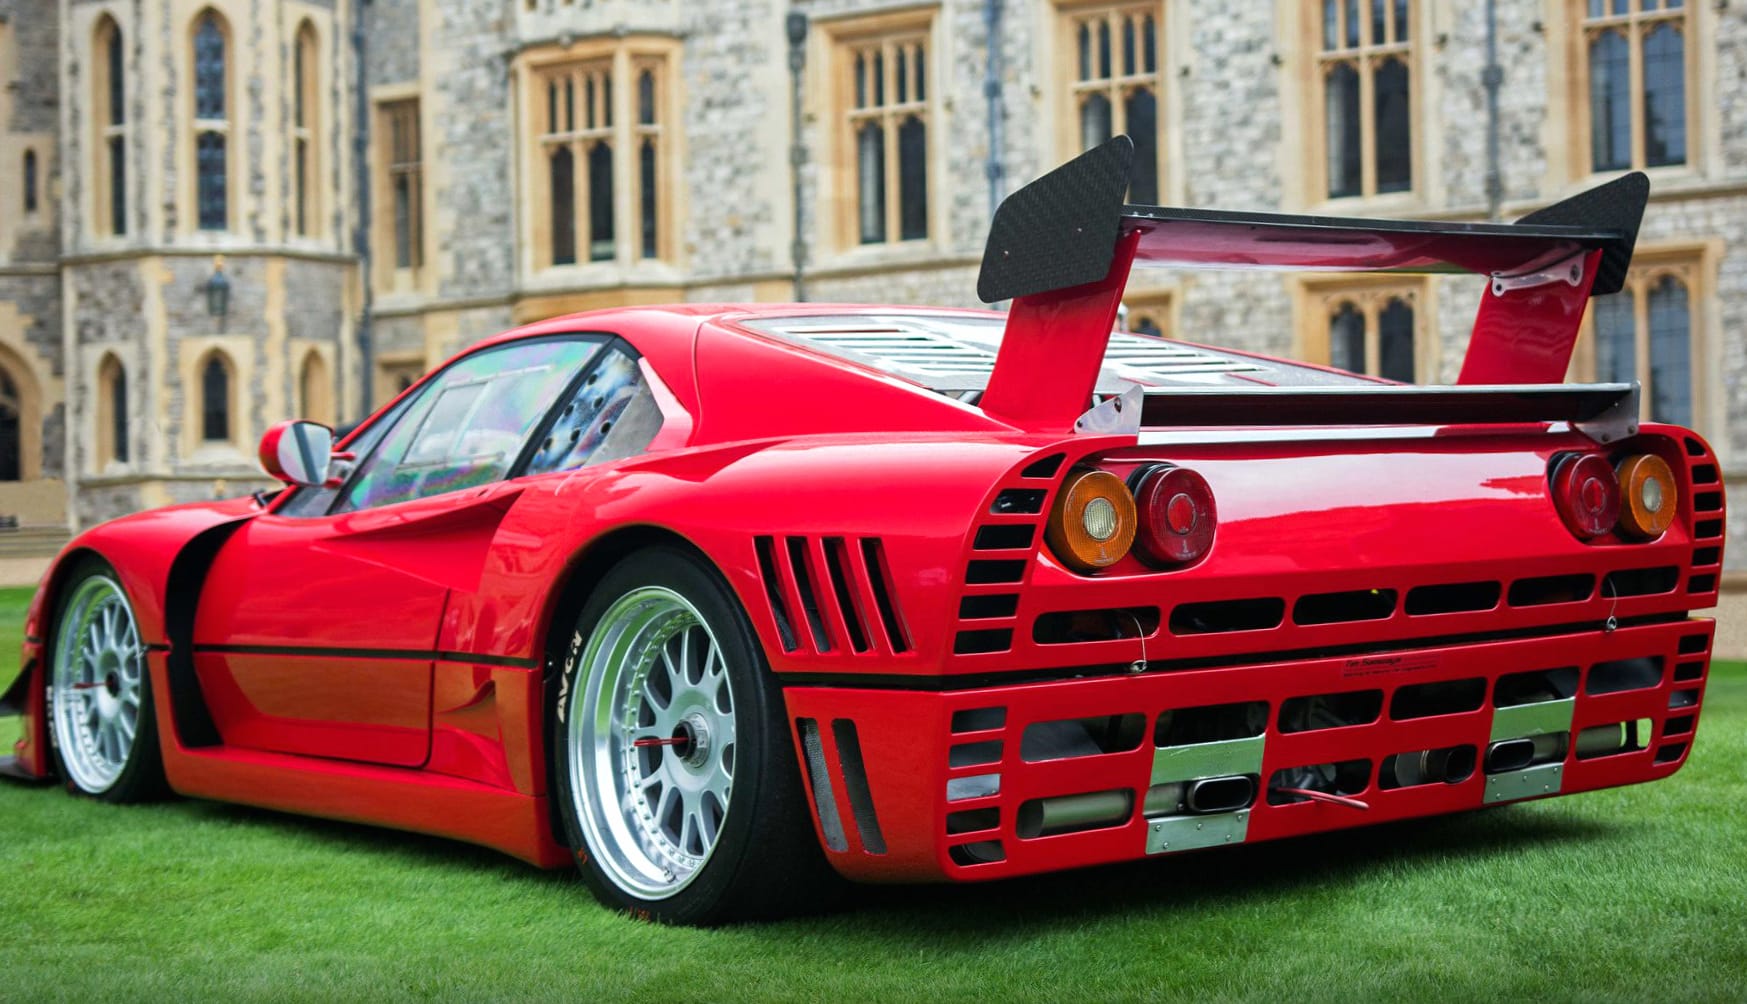 Ferrari GTO Evoluzione wallpapers HD quality